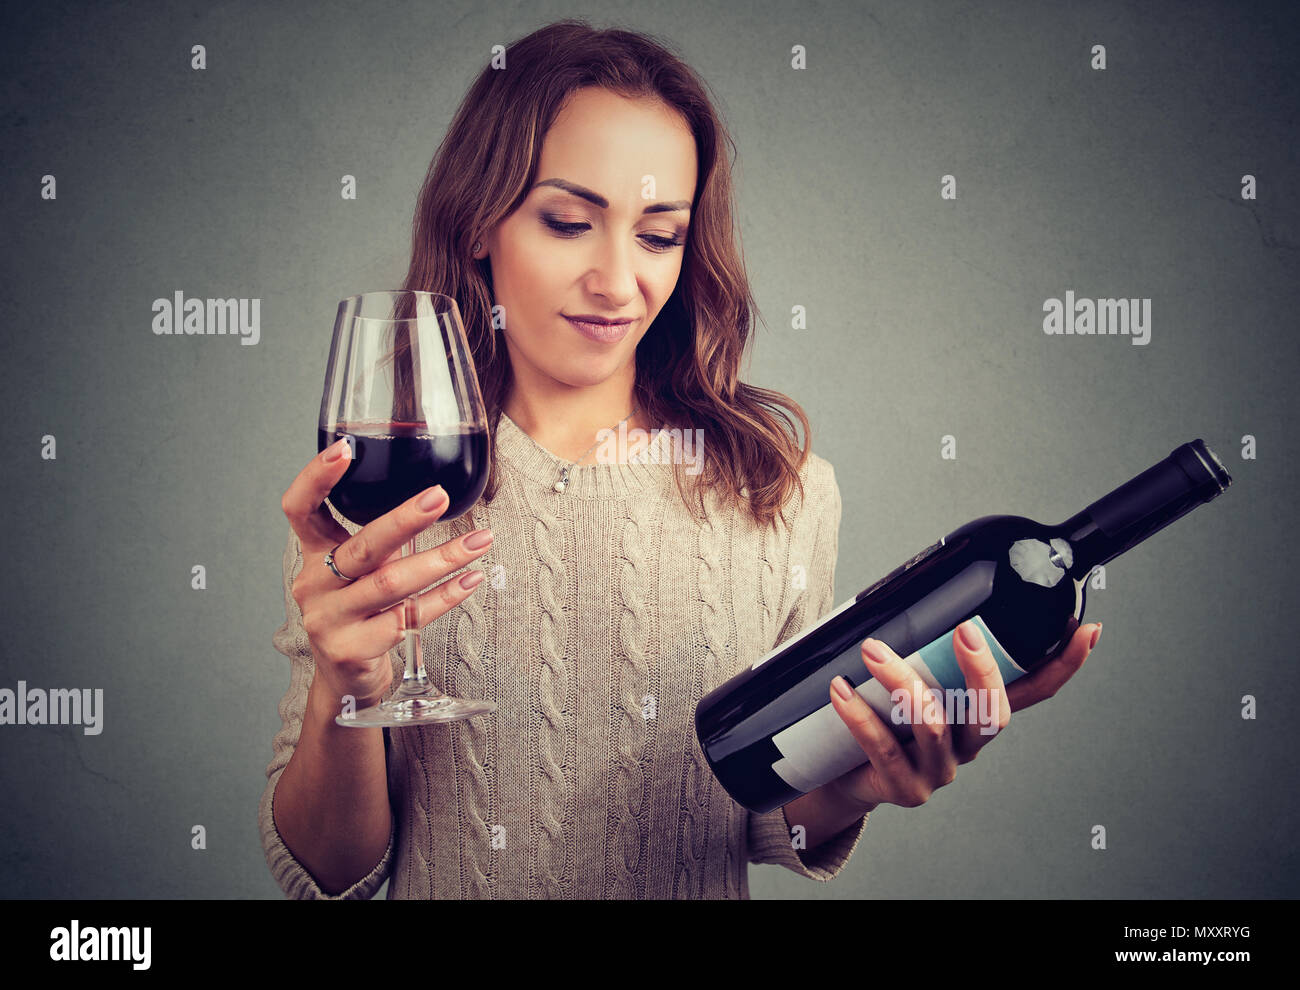 Junges Mädchen mit Flasche und Glas Rotwein auf der Suche grumpy wegen des schlechten Geschmacks Stockfoto